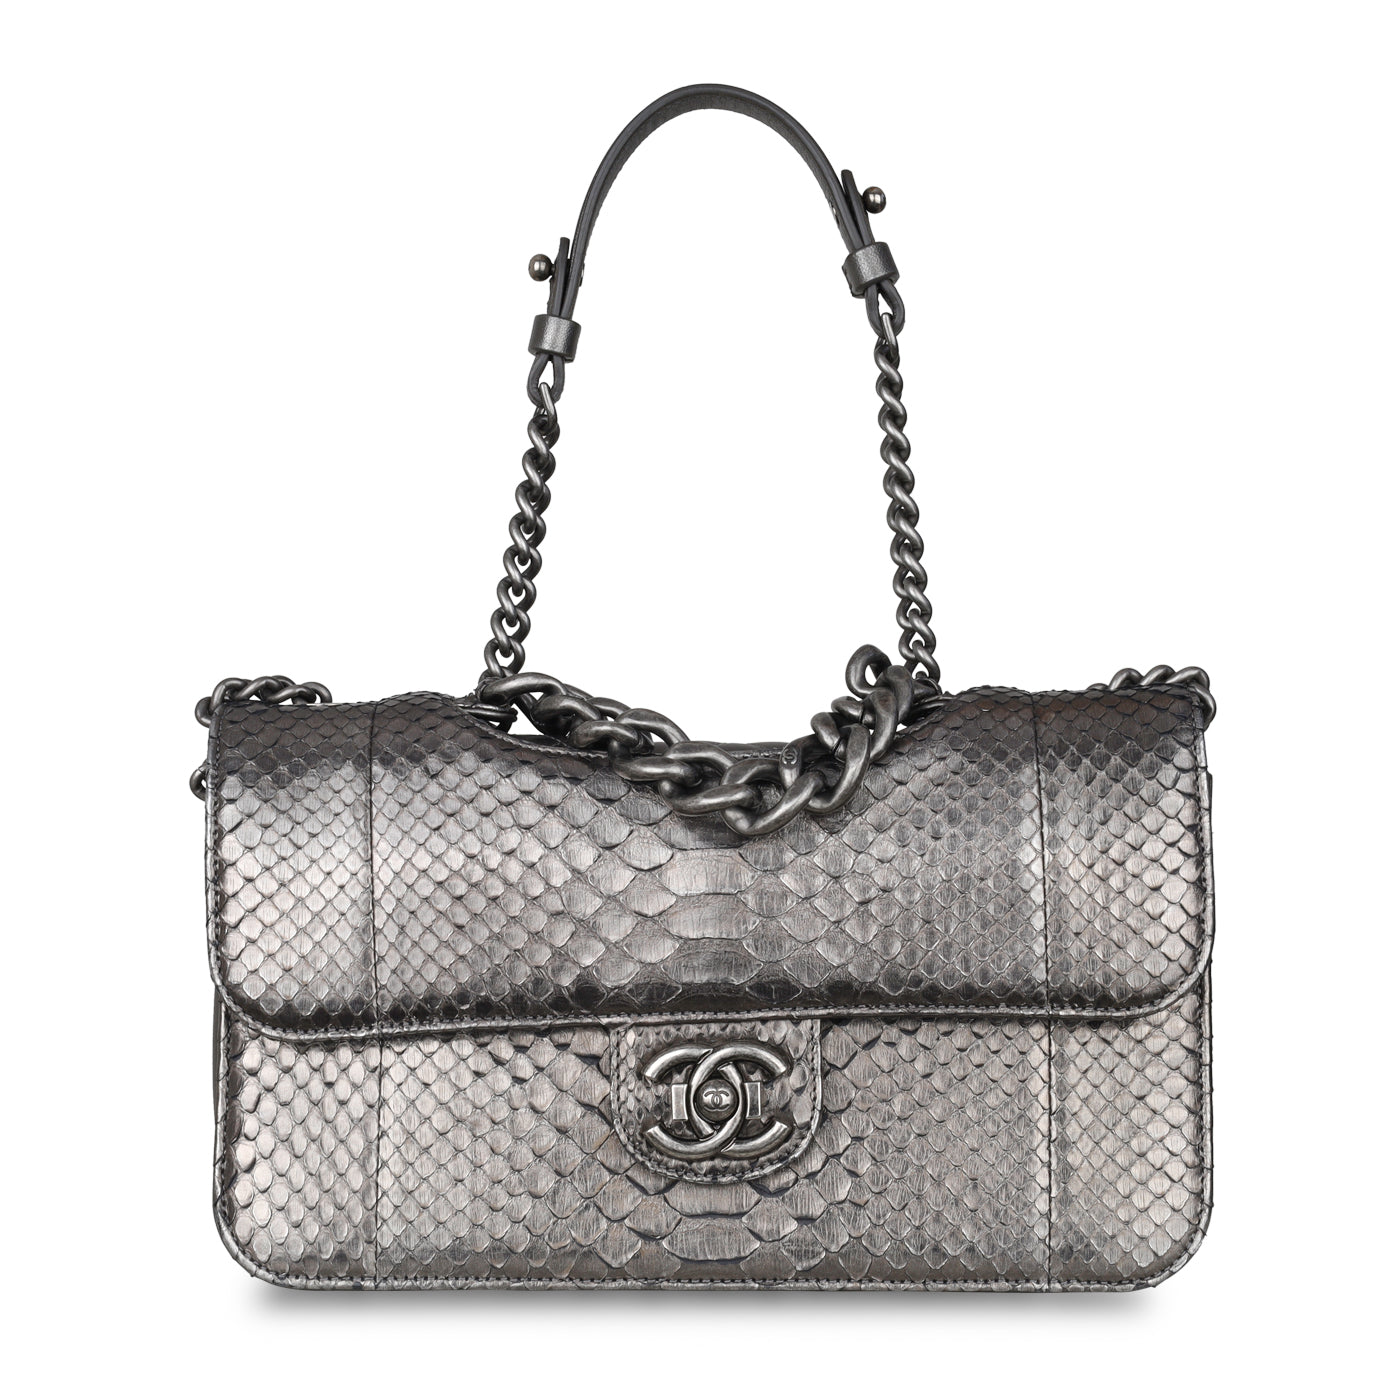 Chanel - Python Shoulder Bag - Metallic - RHW - Pre-Loved